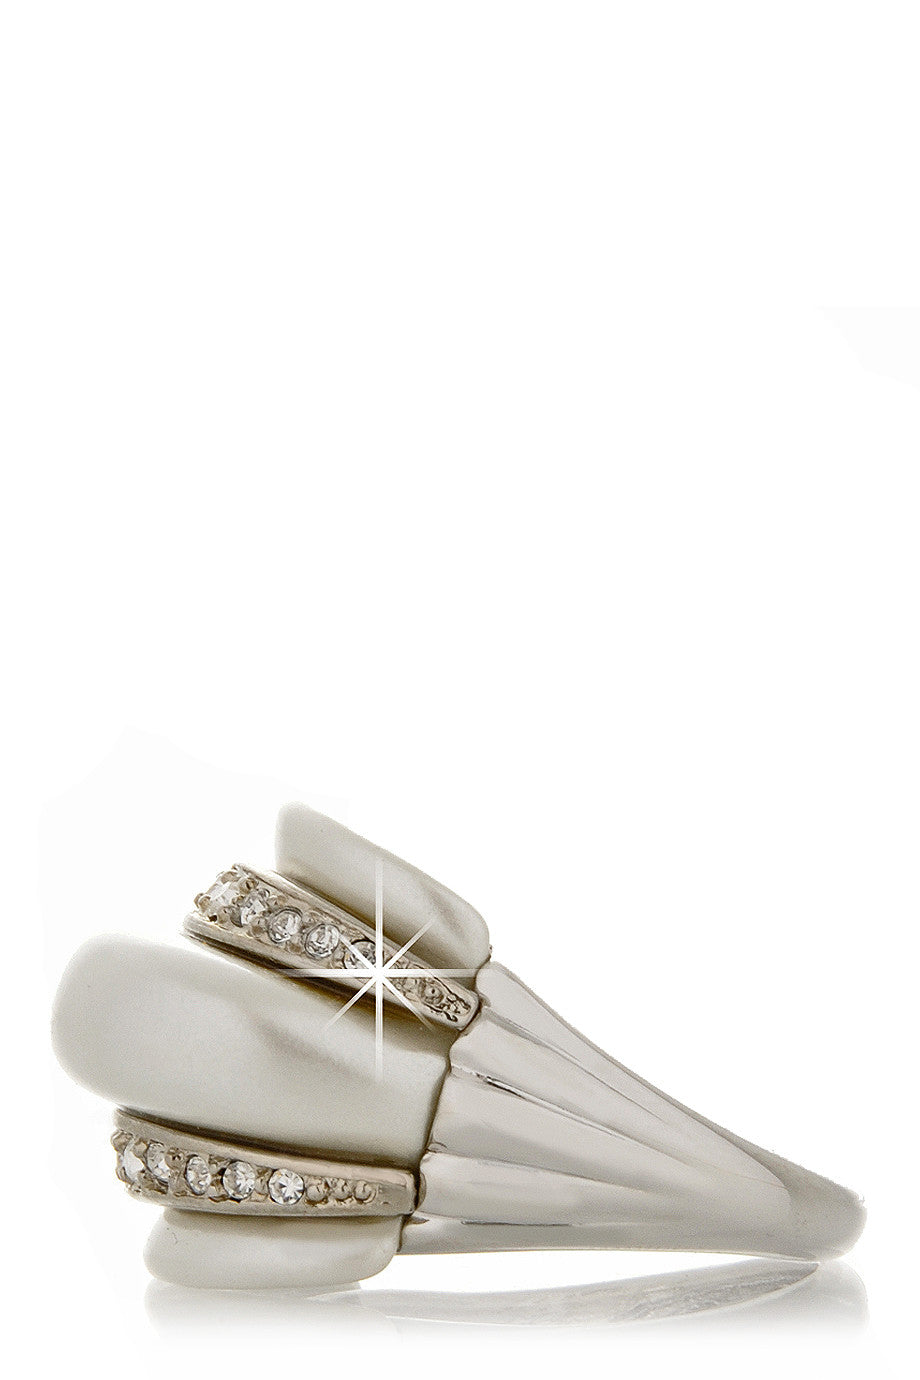 Λευκό Δαχτυλίδι με Κρύσταλλα - Kenneth Jay Lane | Κοσμήματα